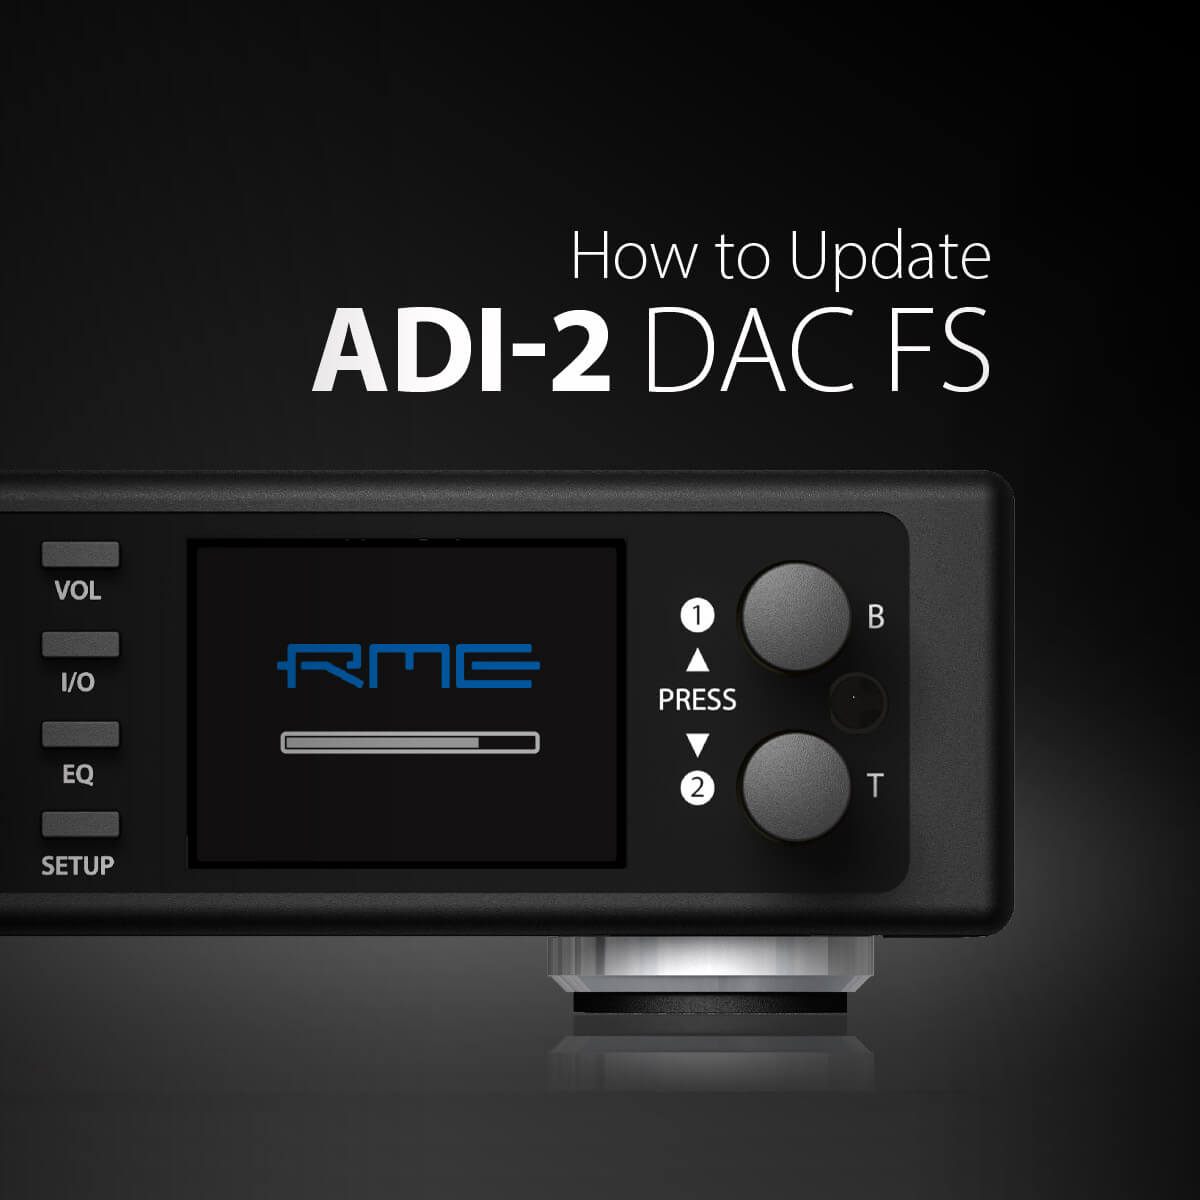 ADI-2 DAC Firmware Update